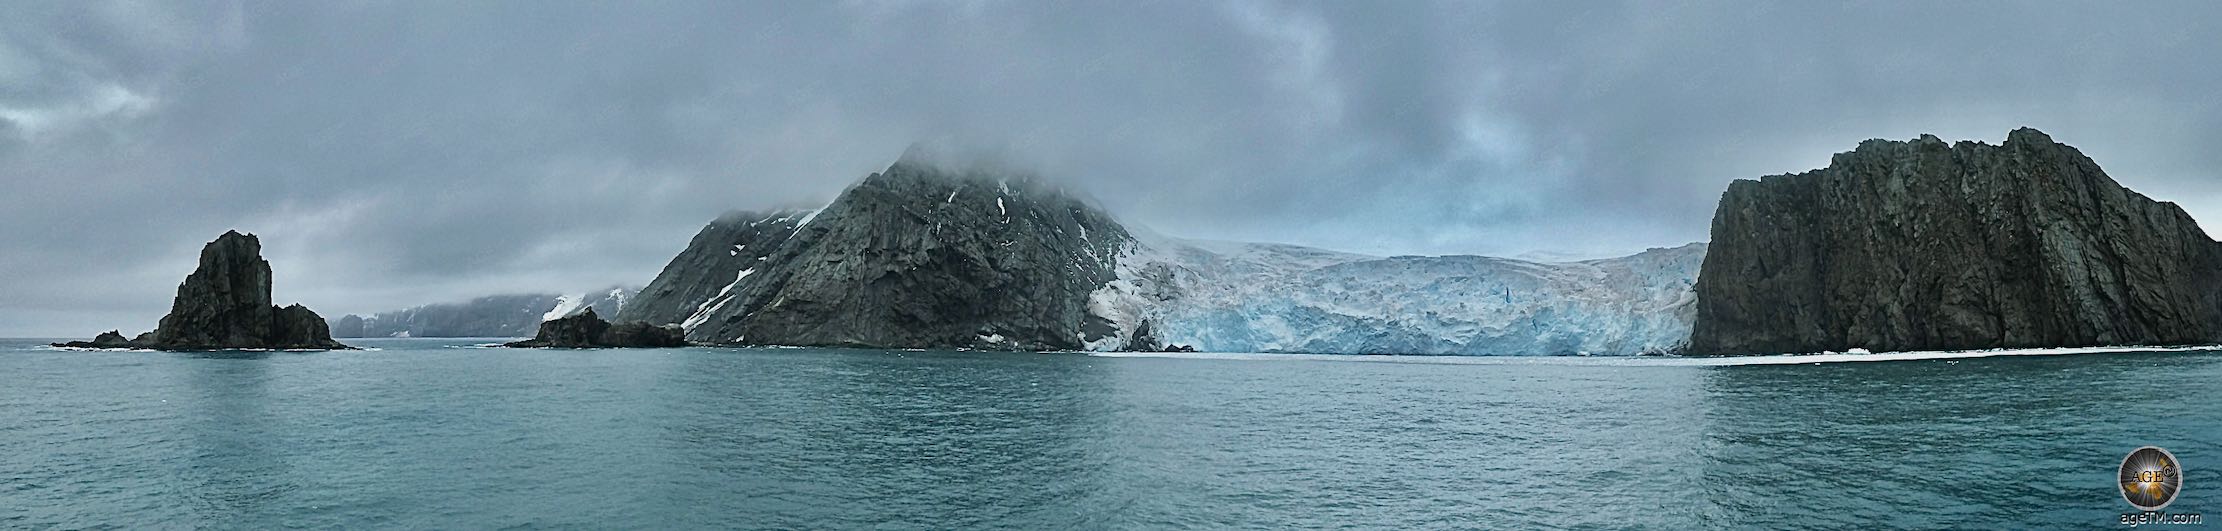 Panorama von Elephant Island mit Gletscher und Point Wild